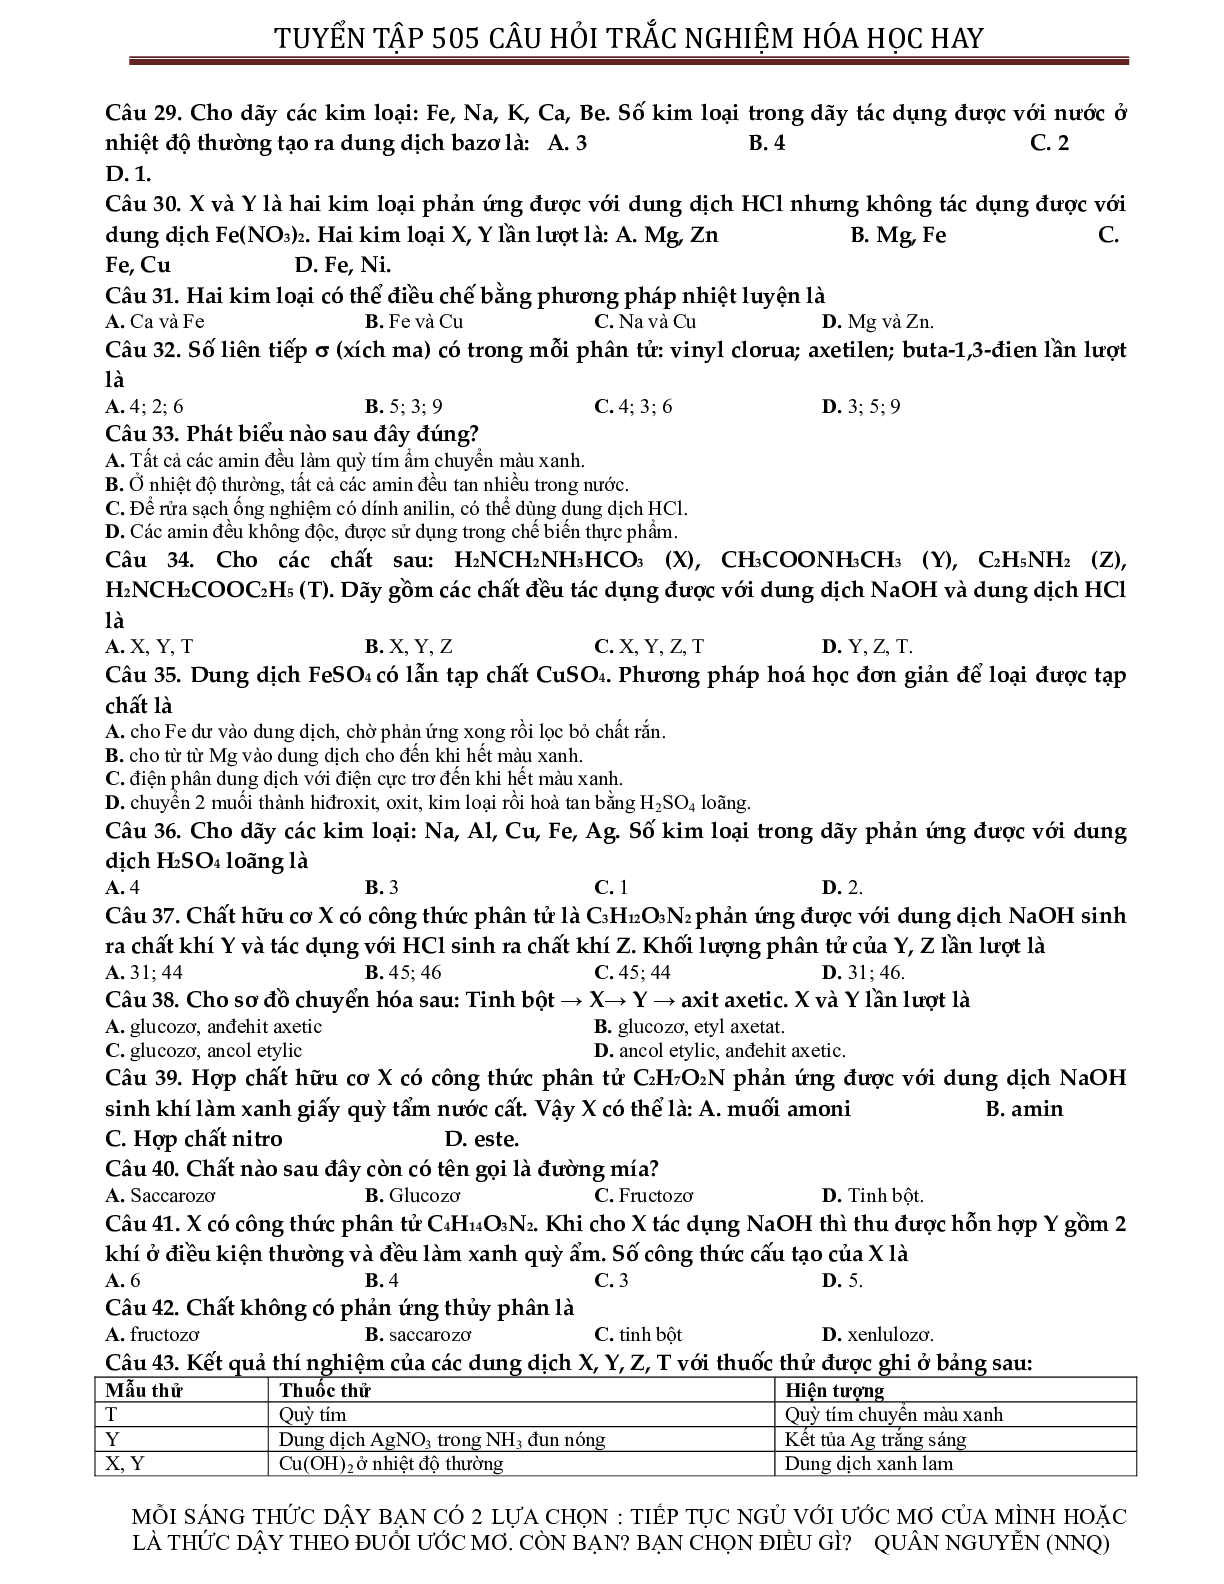 Tuyển chọn 505 câu hỏi lí thuyết trắc nghiệm hóa học 12 có đáp án, chọn lọc (trang 4)